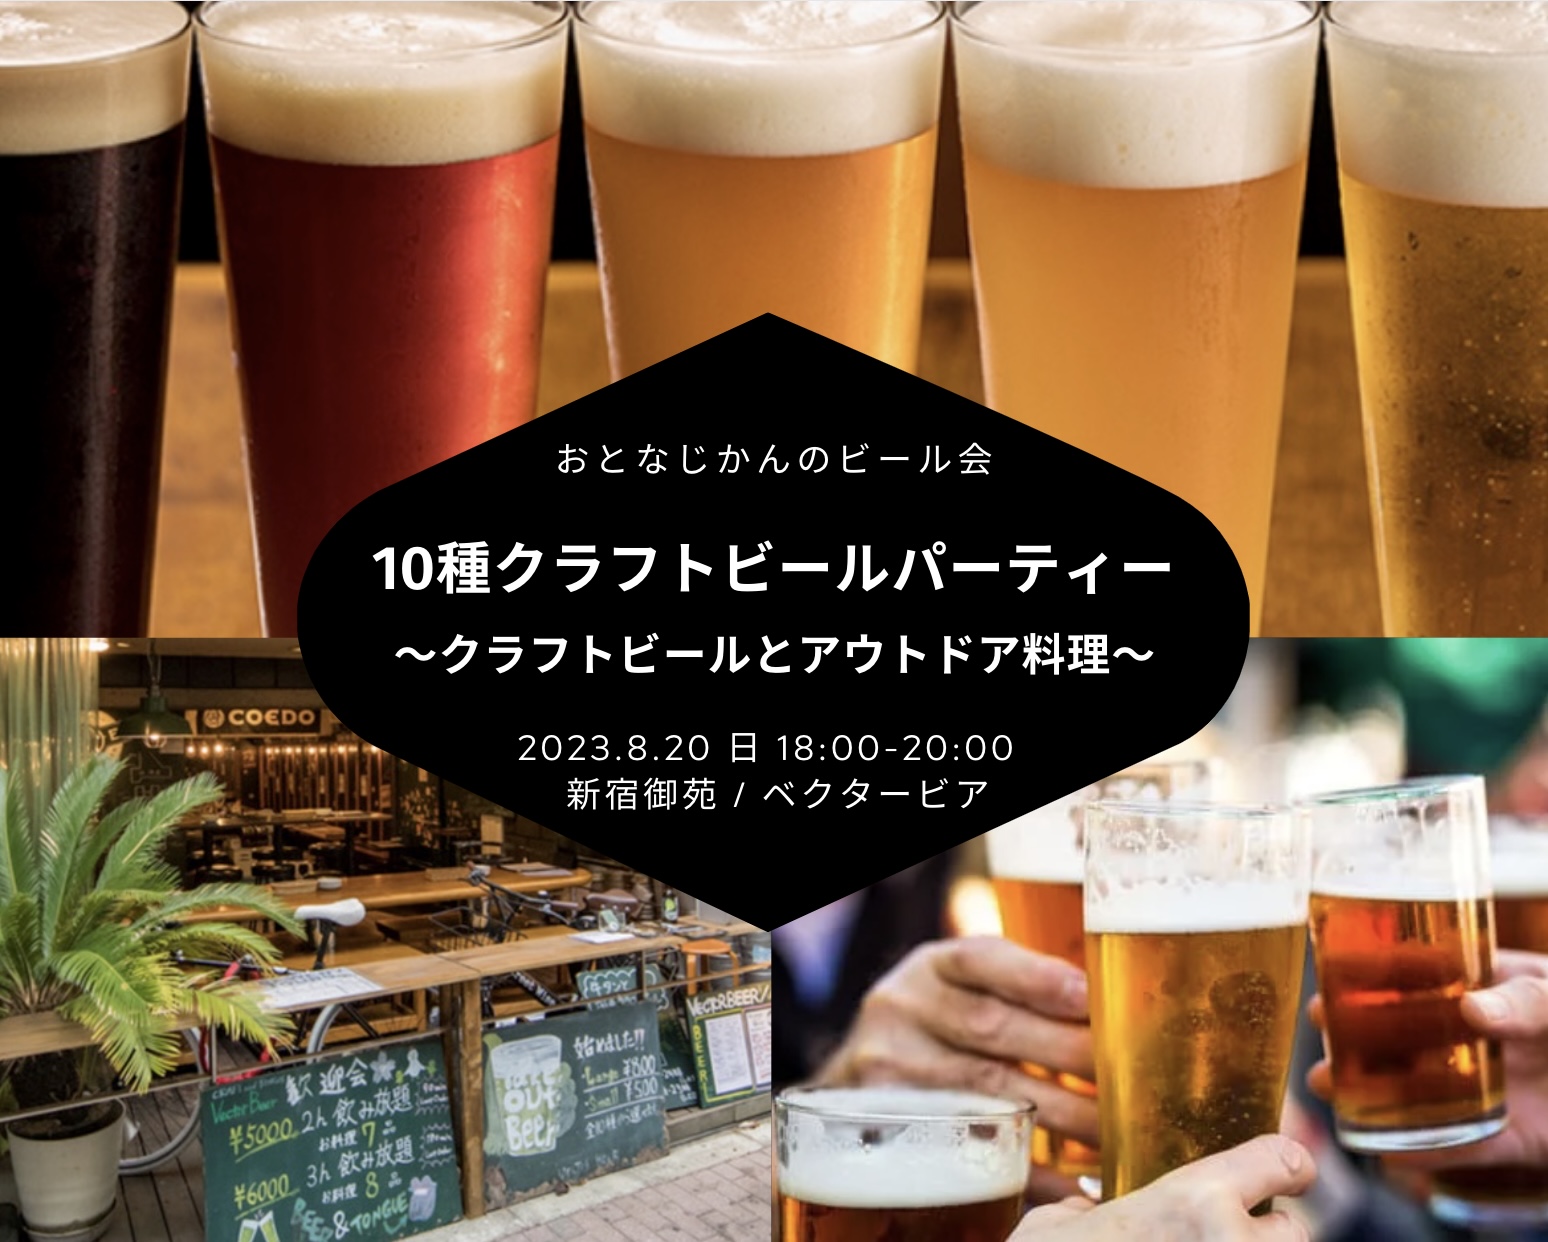 【2023/8/20】ビール会・ 交流会・お食事会 おとなじかんのワイン会